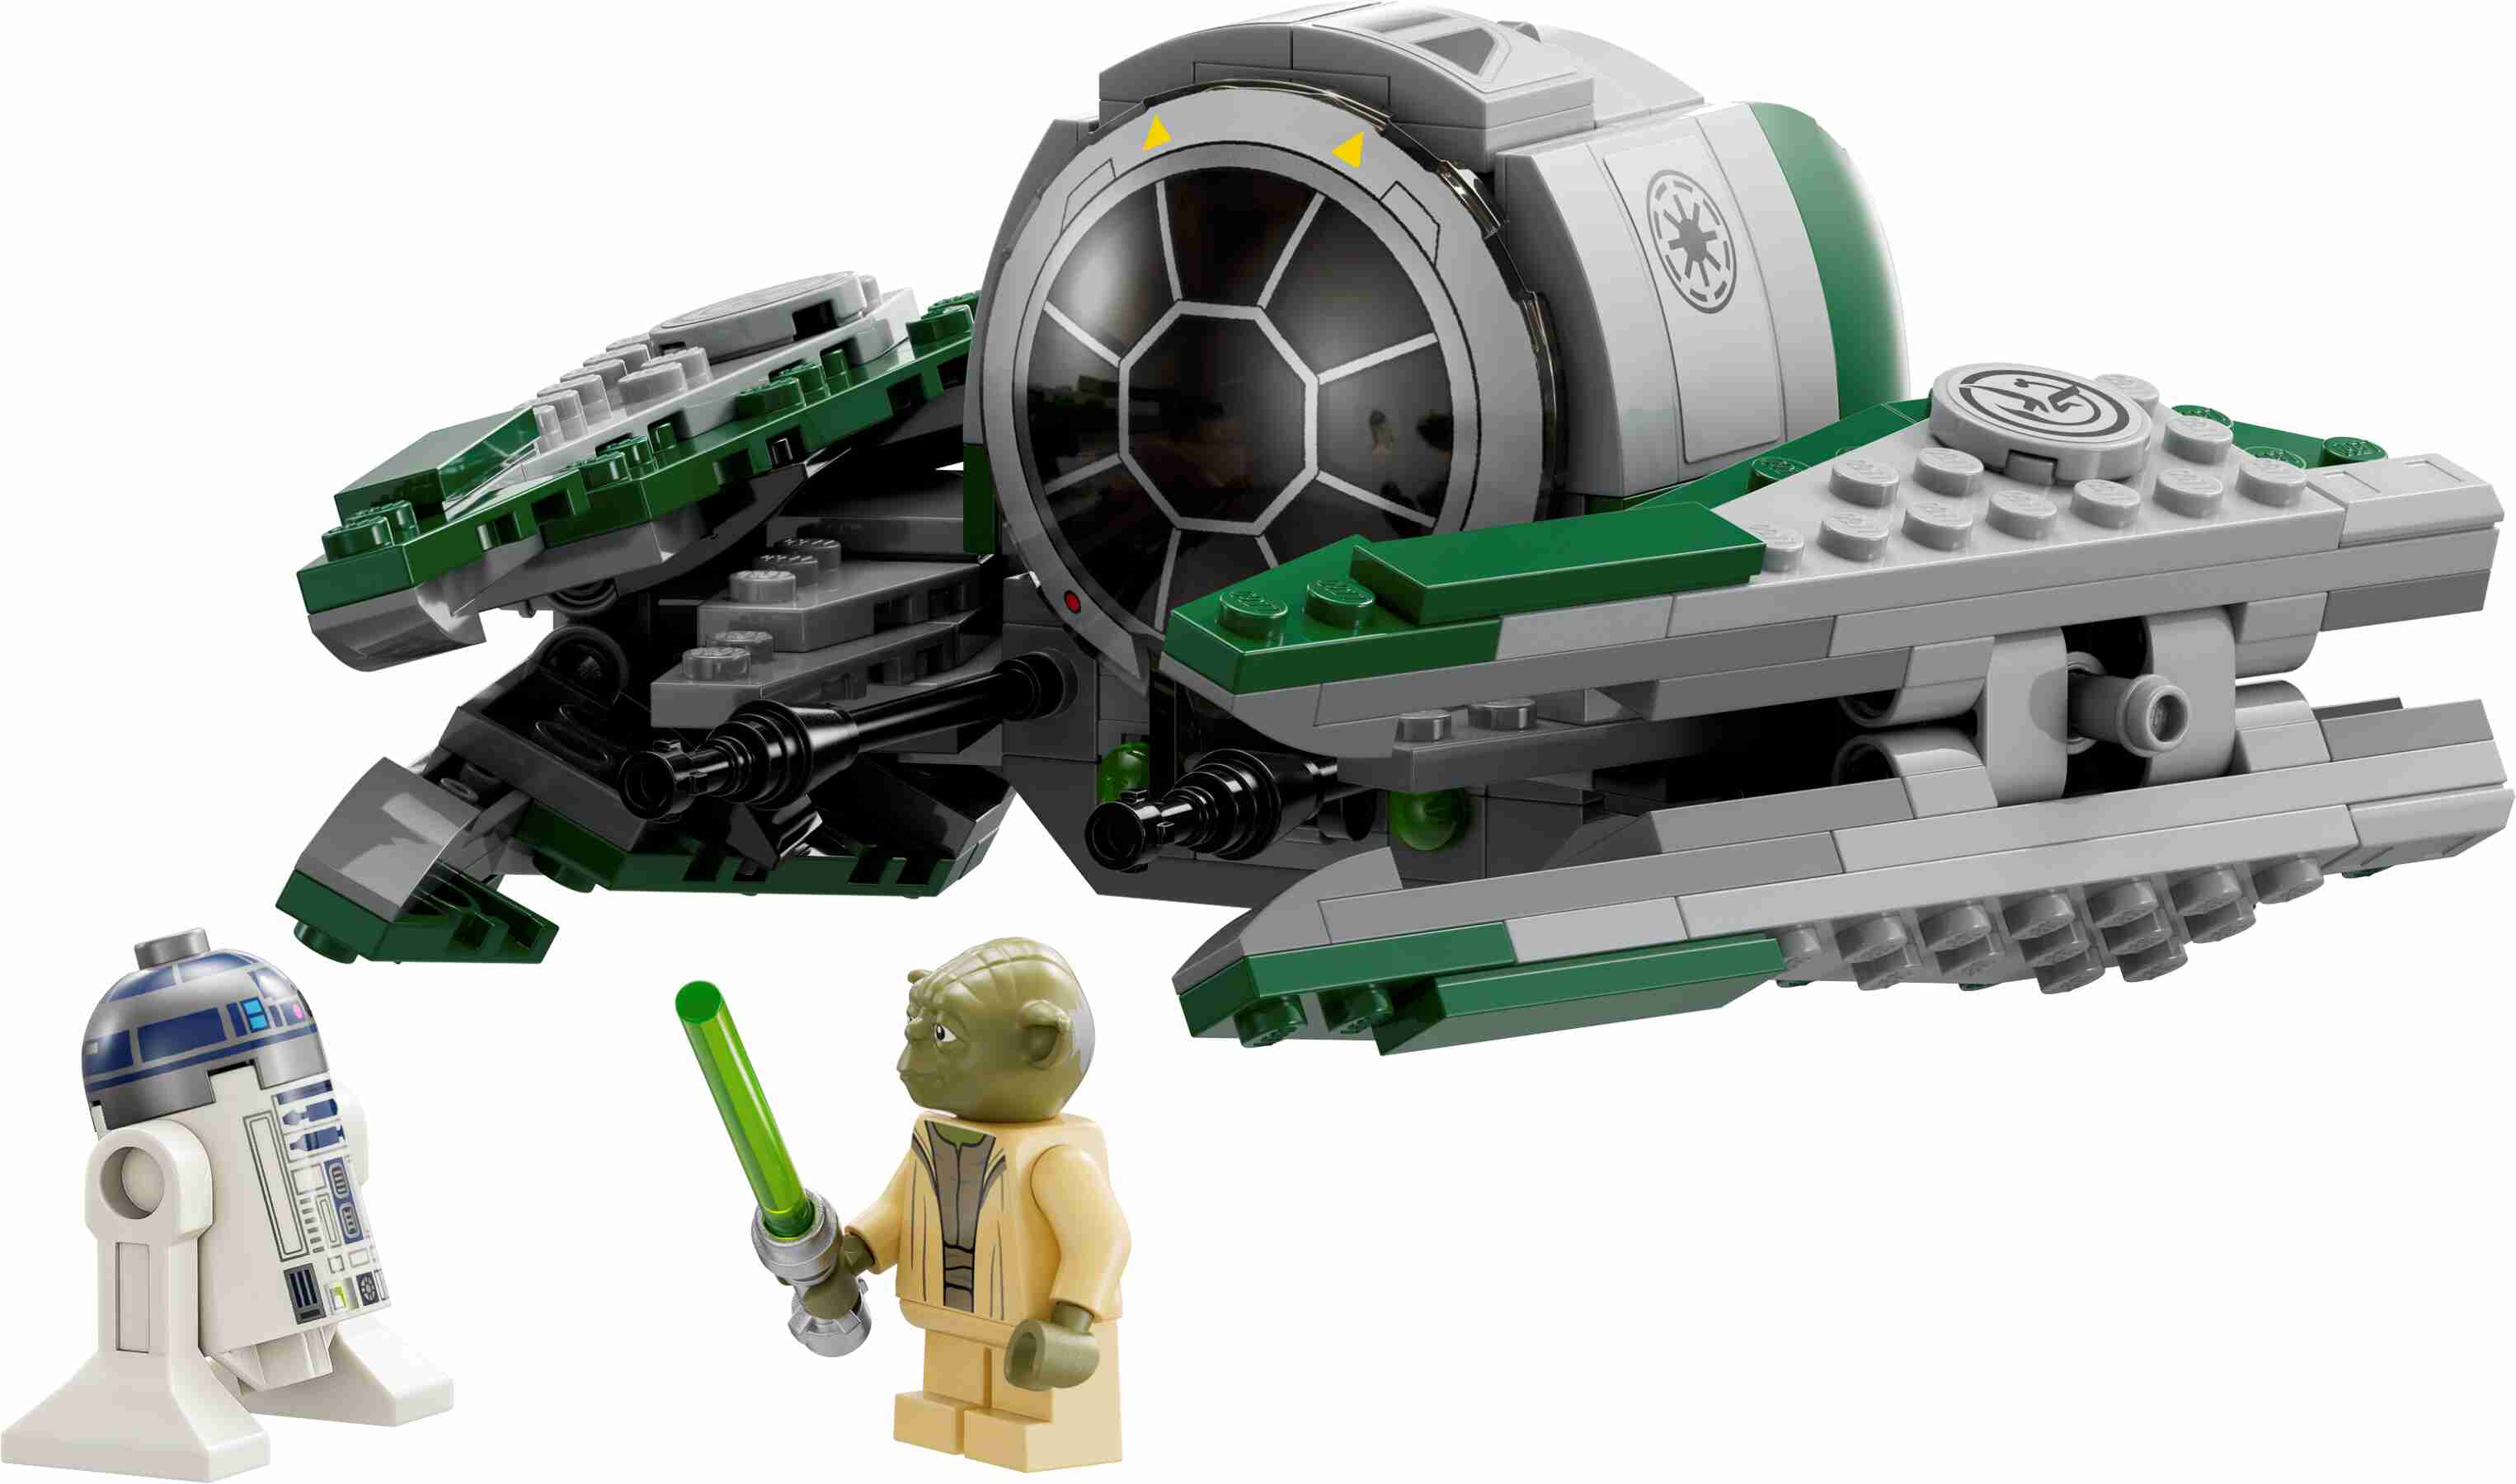 LEGO 75360 Star Wars Yodas Jedi Starfighter, Minifiguren Yoda und R2-D2, 